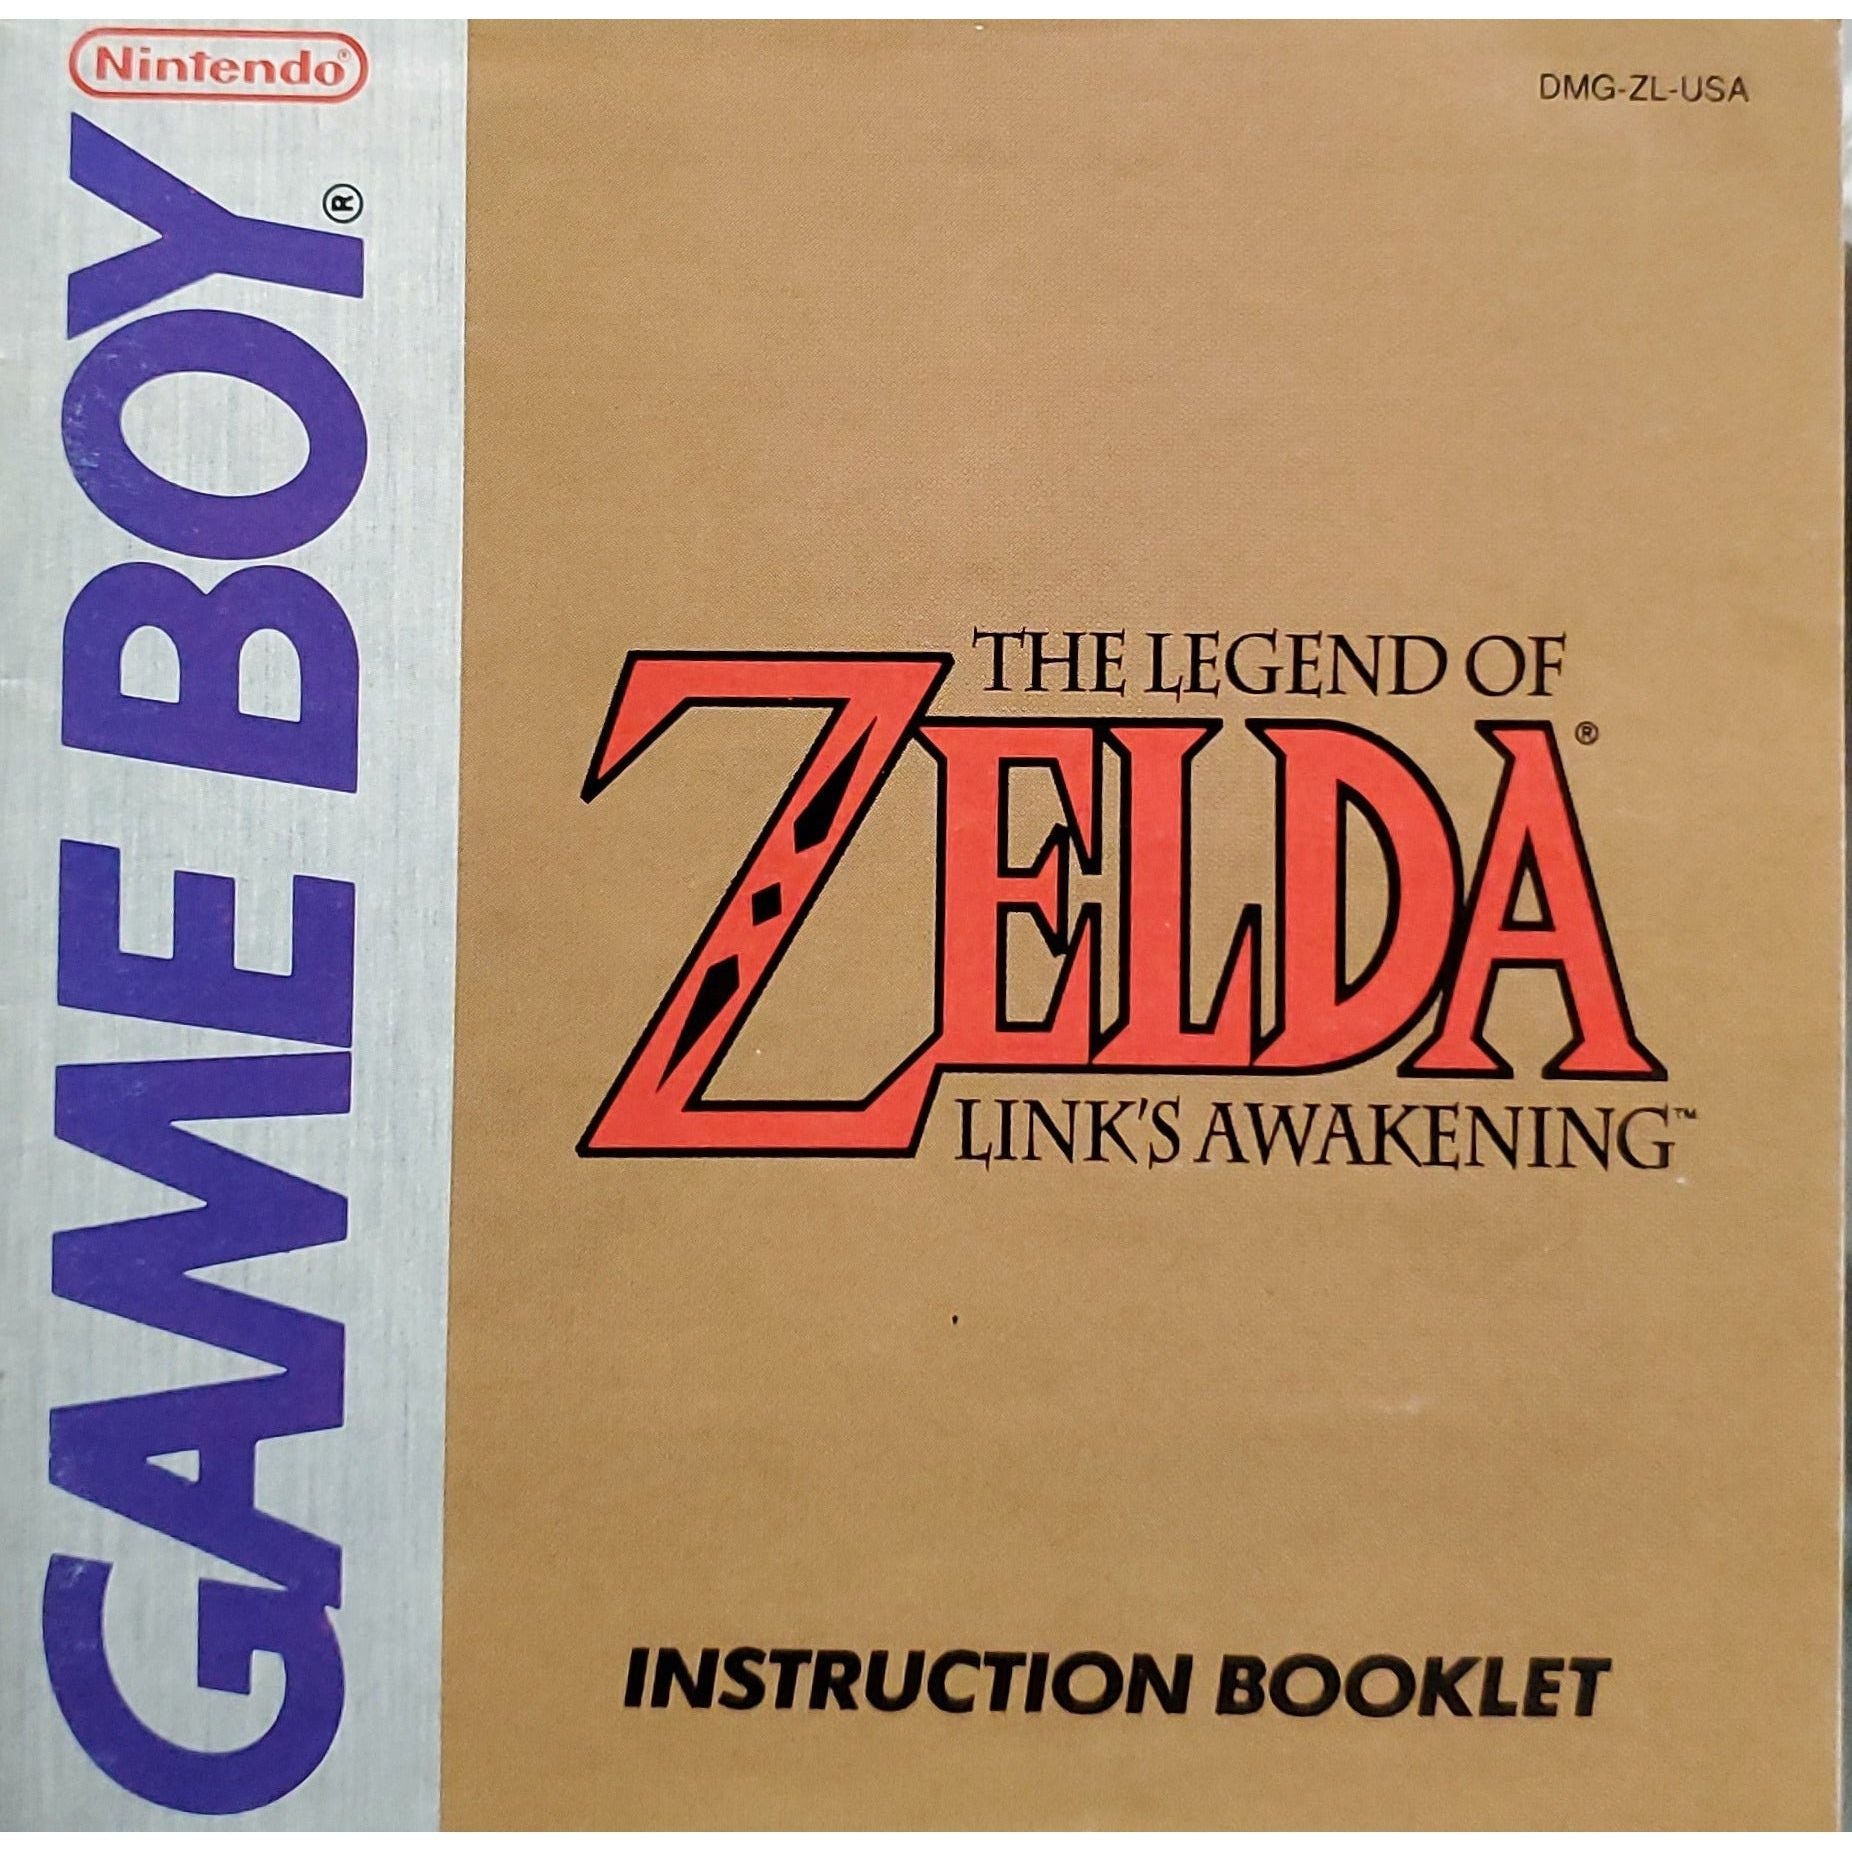 FR - The Legend of Zelda Link's Awakening (Manuel)